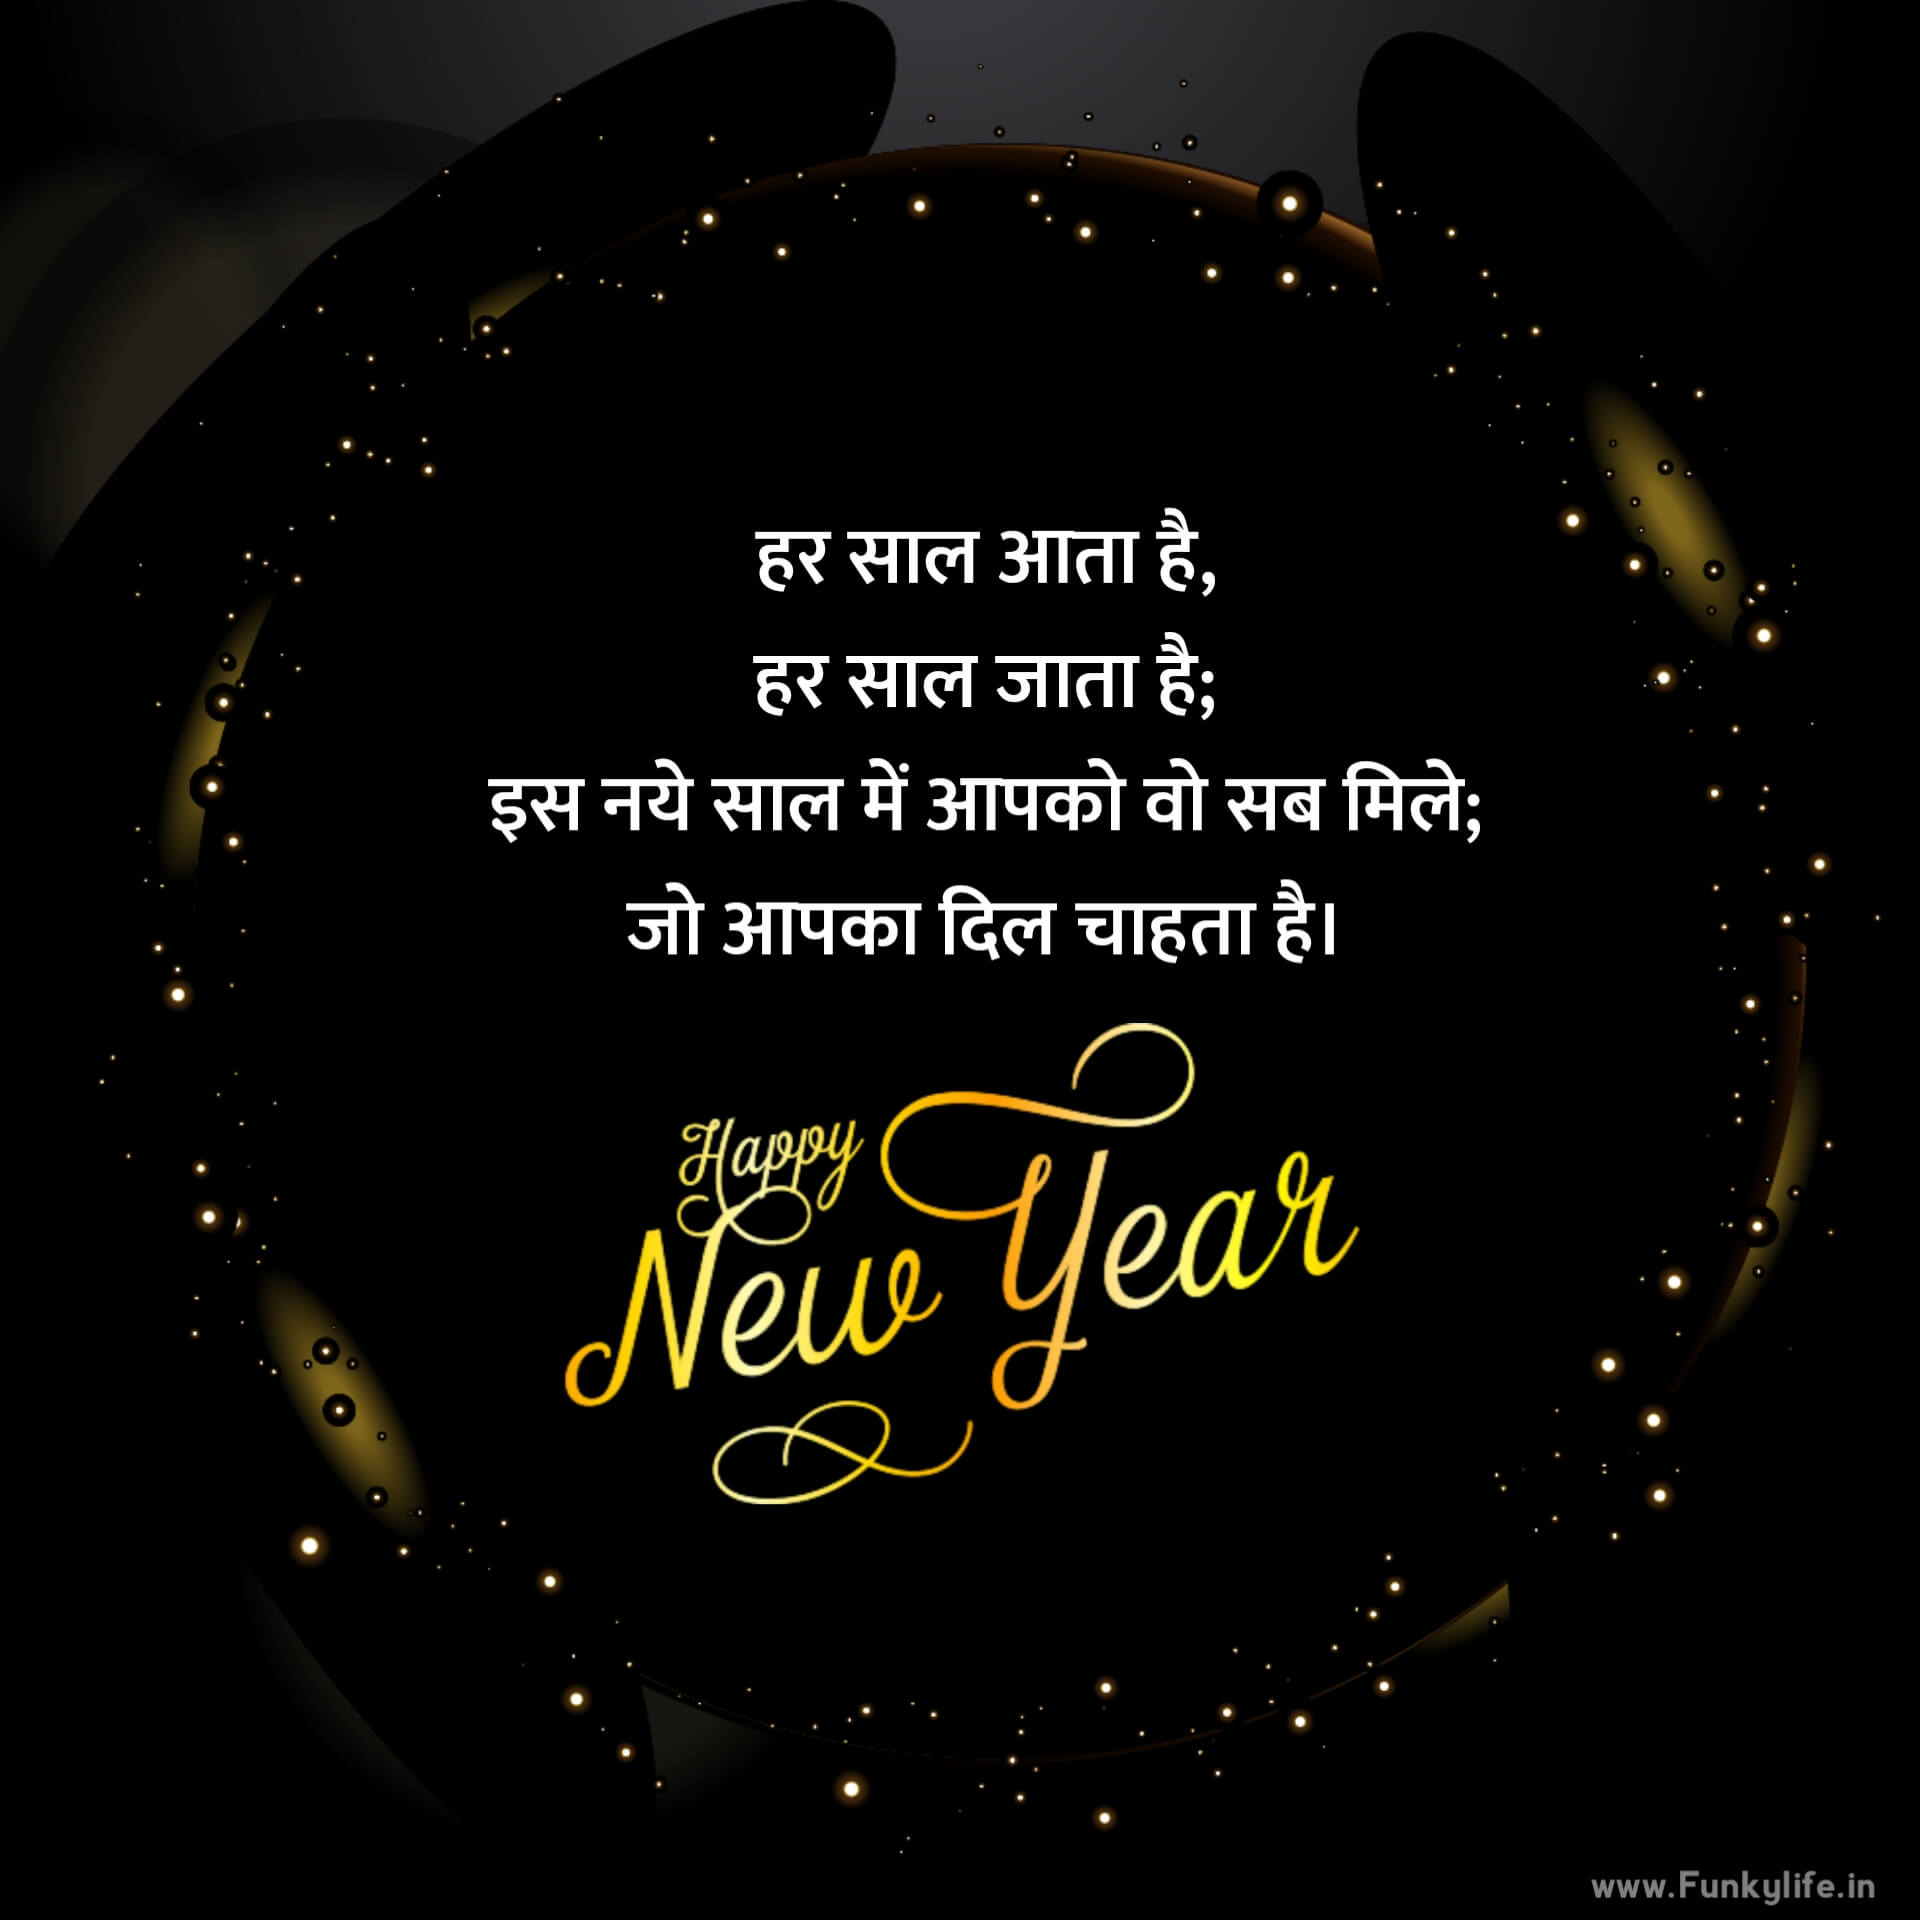 हिंदी में नव वर्ष की शुभकामनाएँ